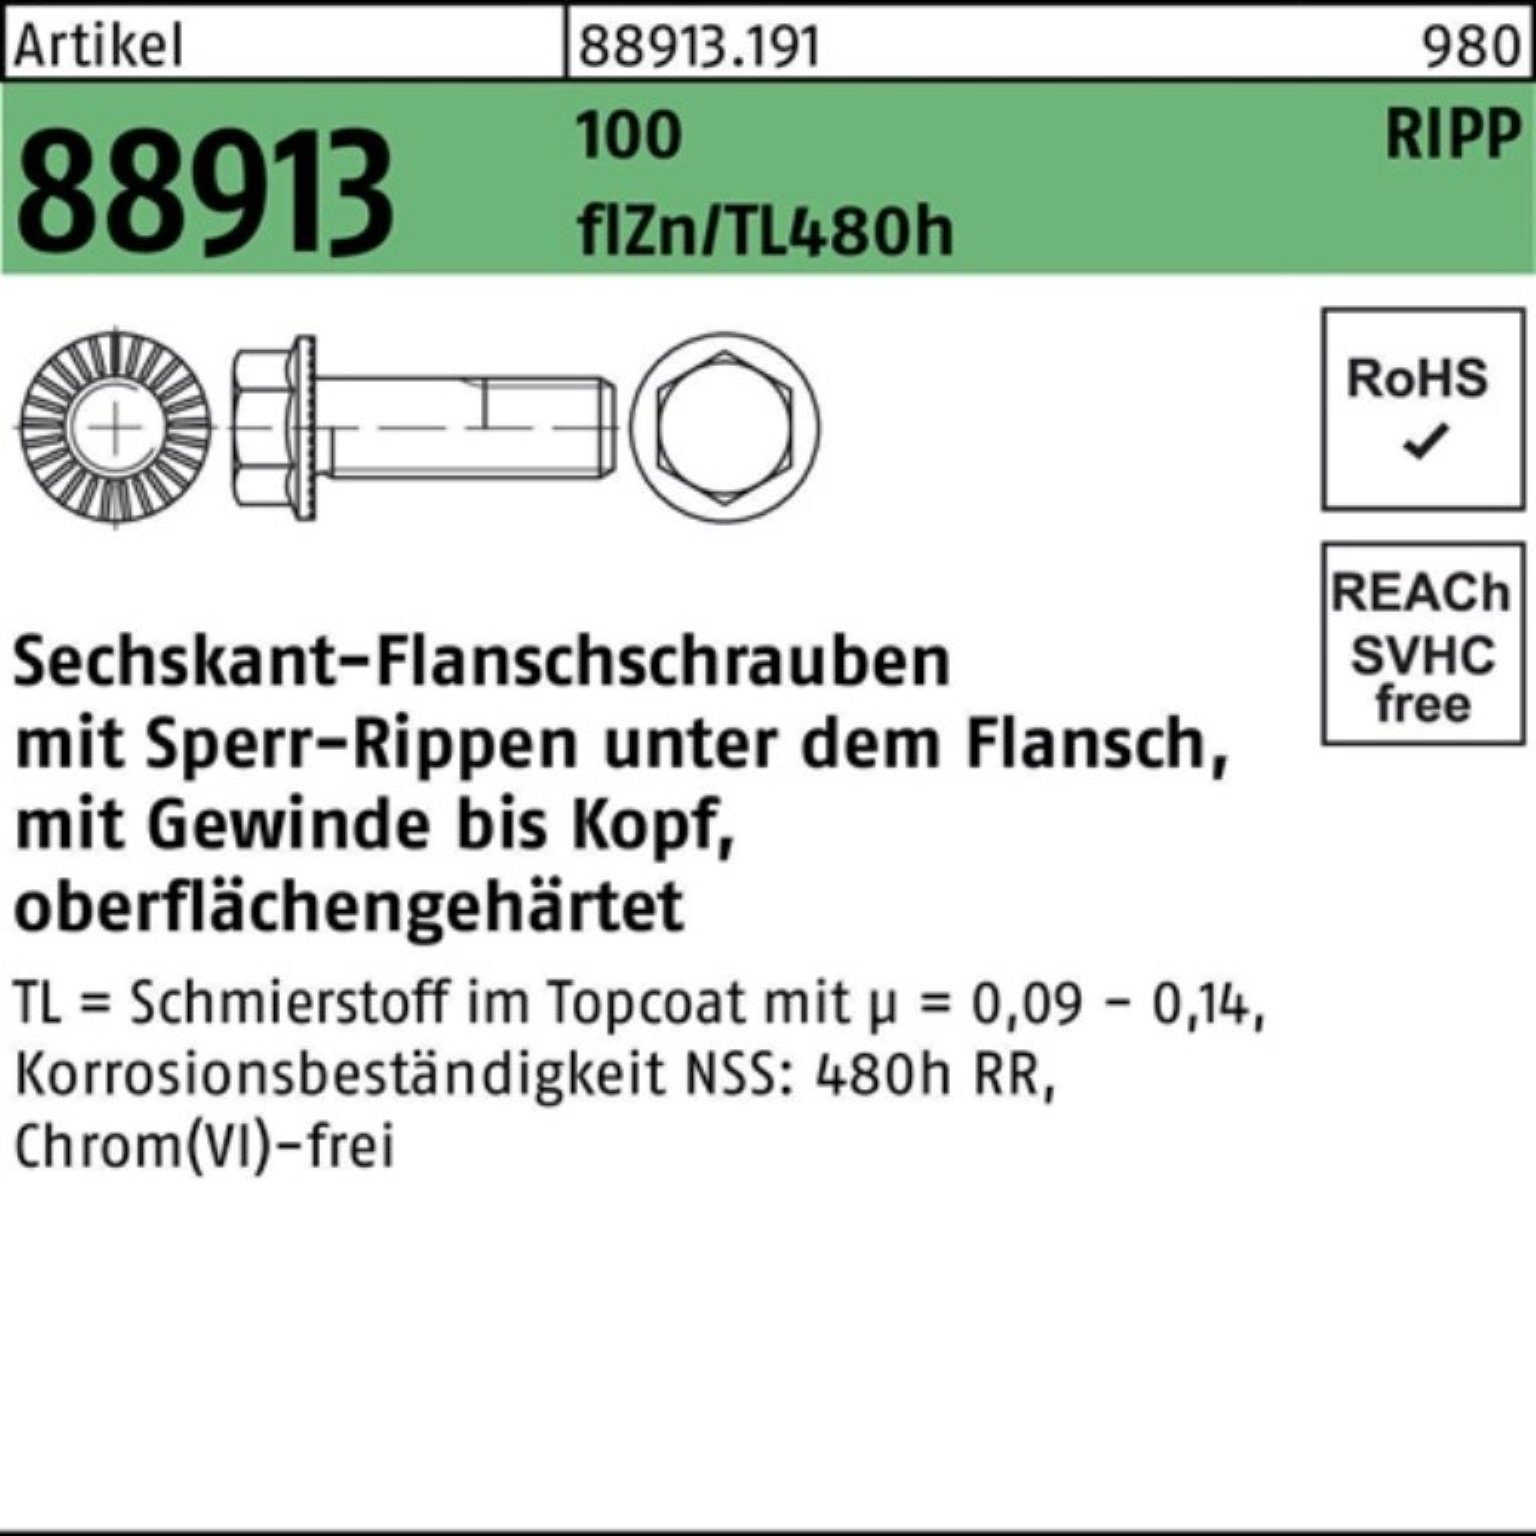 Reyher Schraube 100er Pack Sechskantflanschschraube R 88913 Sperr-Ripp VG M16x25 100 f